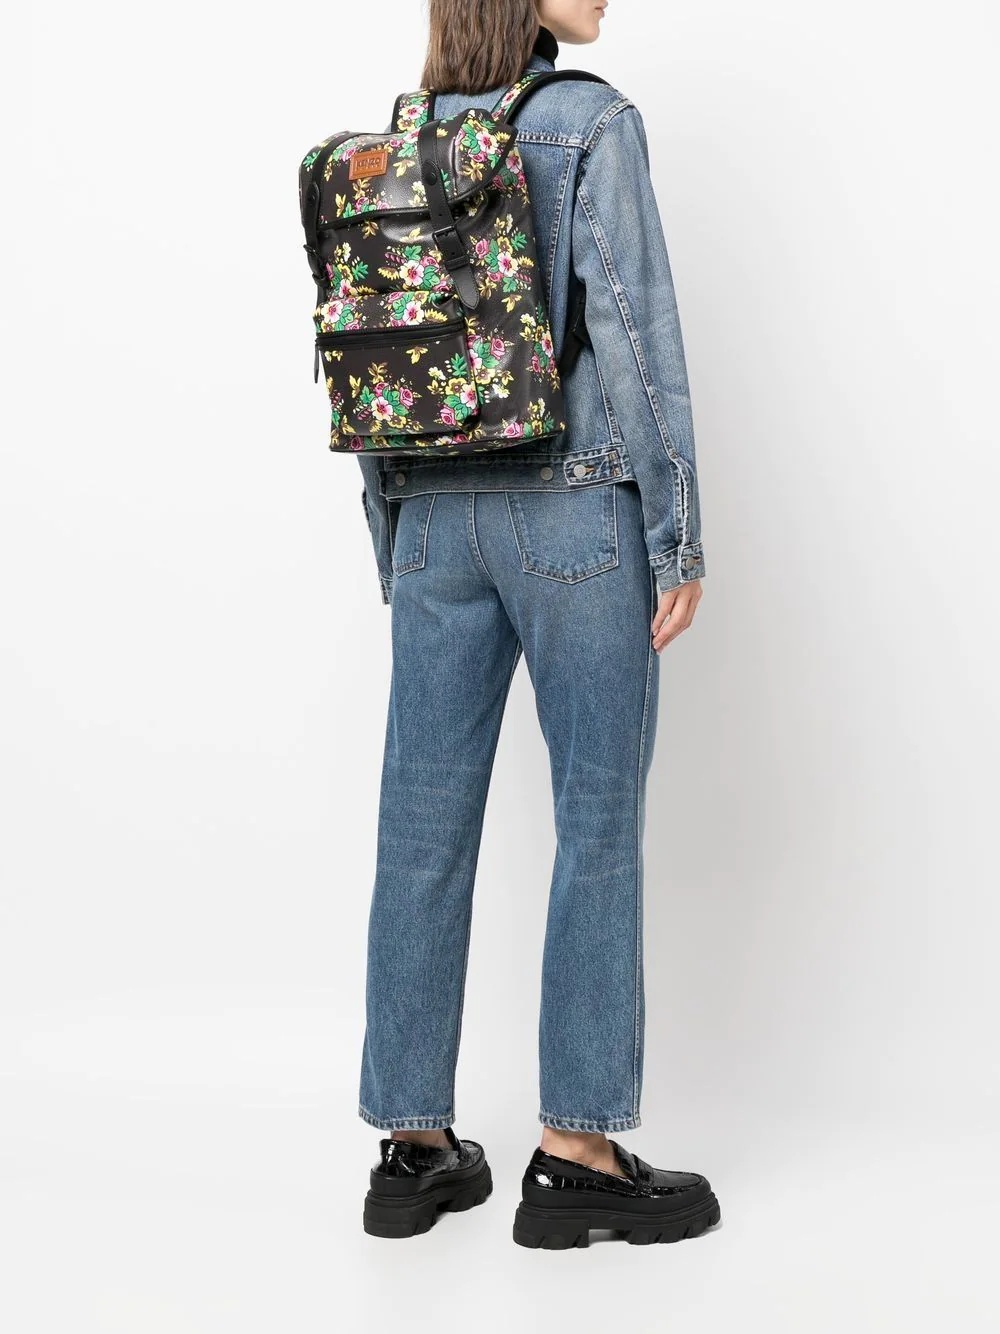 floral foldover backpack - 2